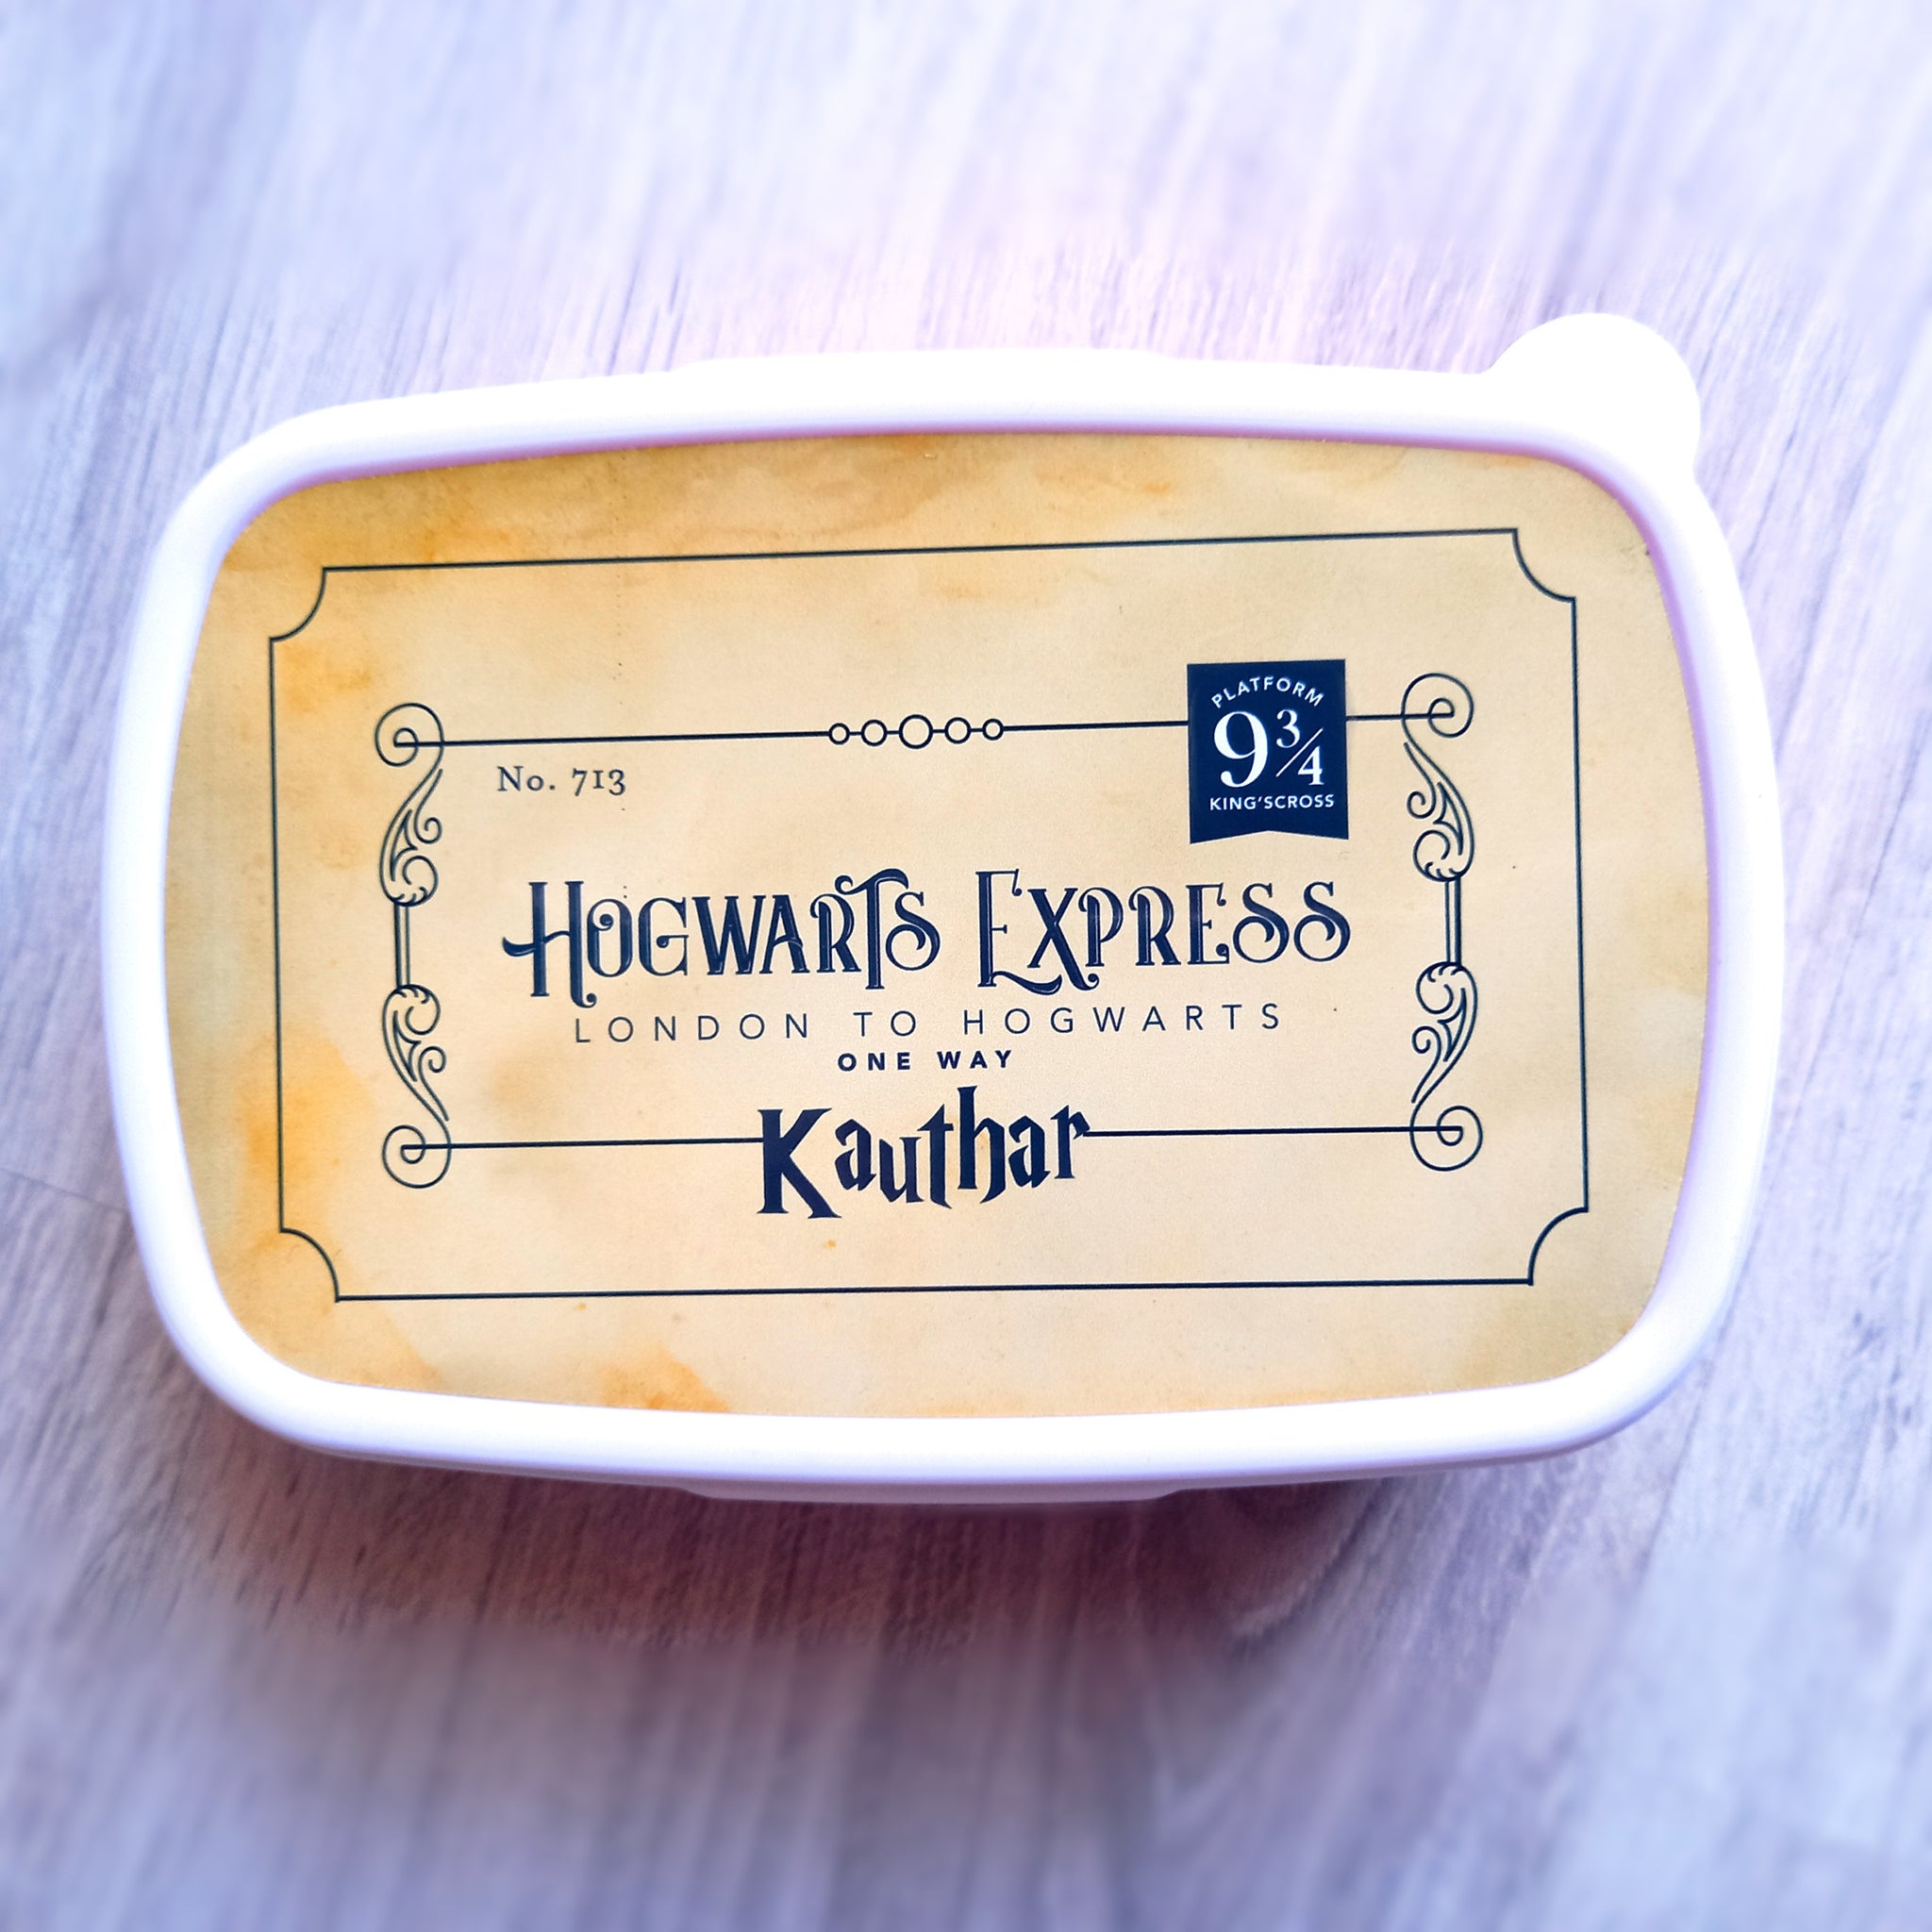 Hogwarts Express lunchbox